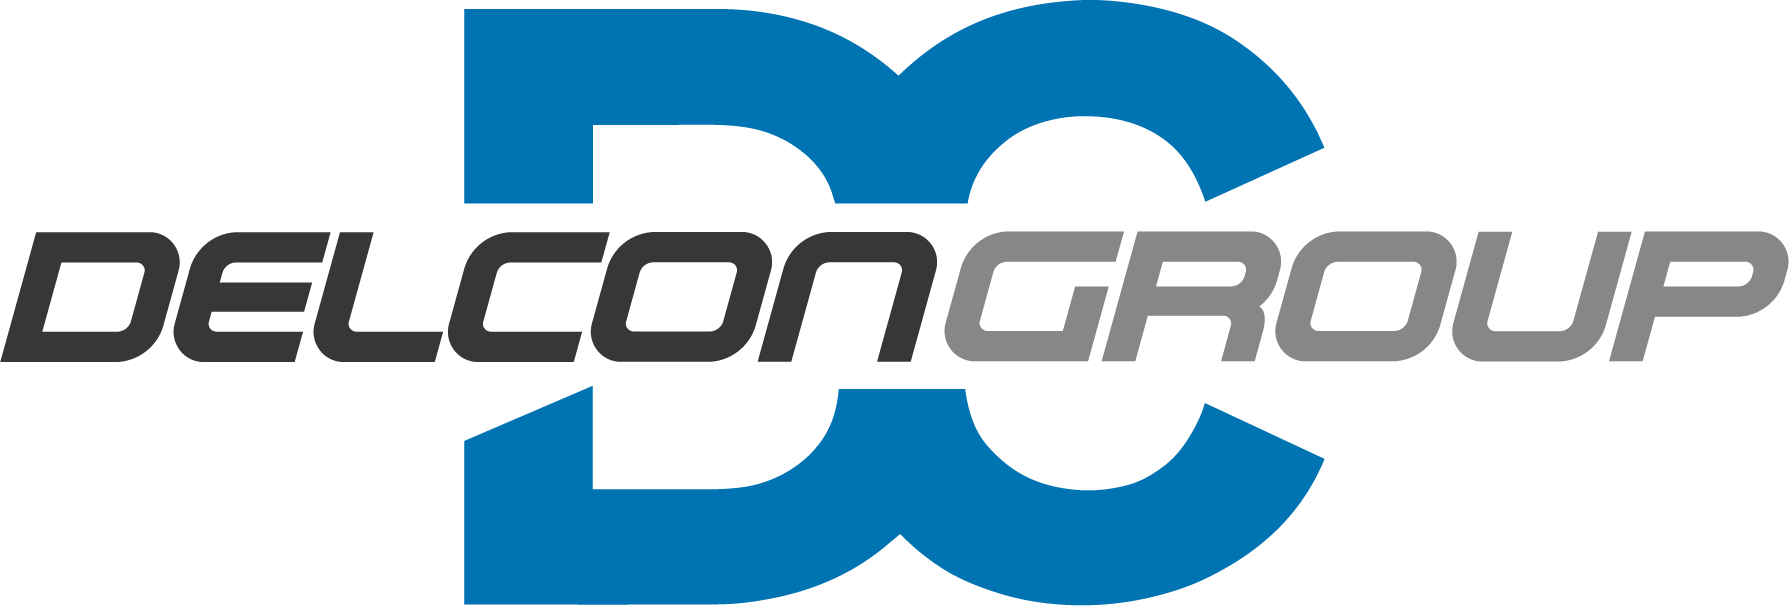 delcongroup_logo_final centred